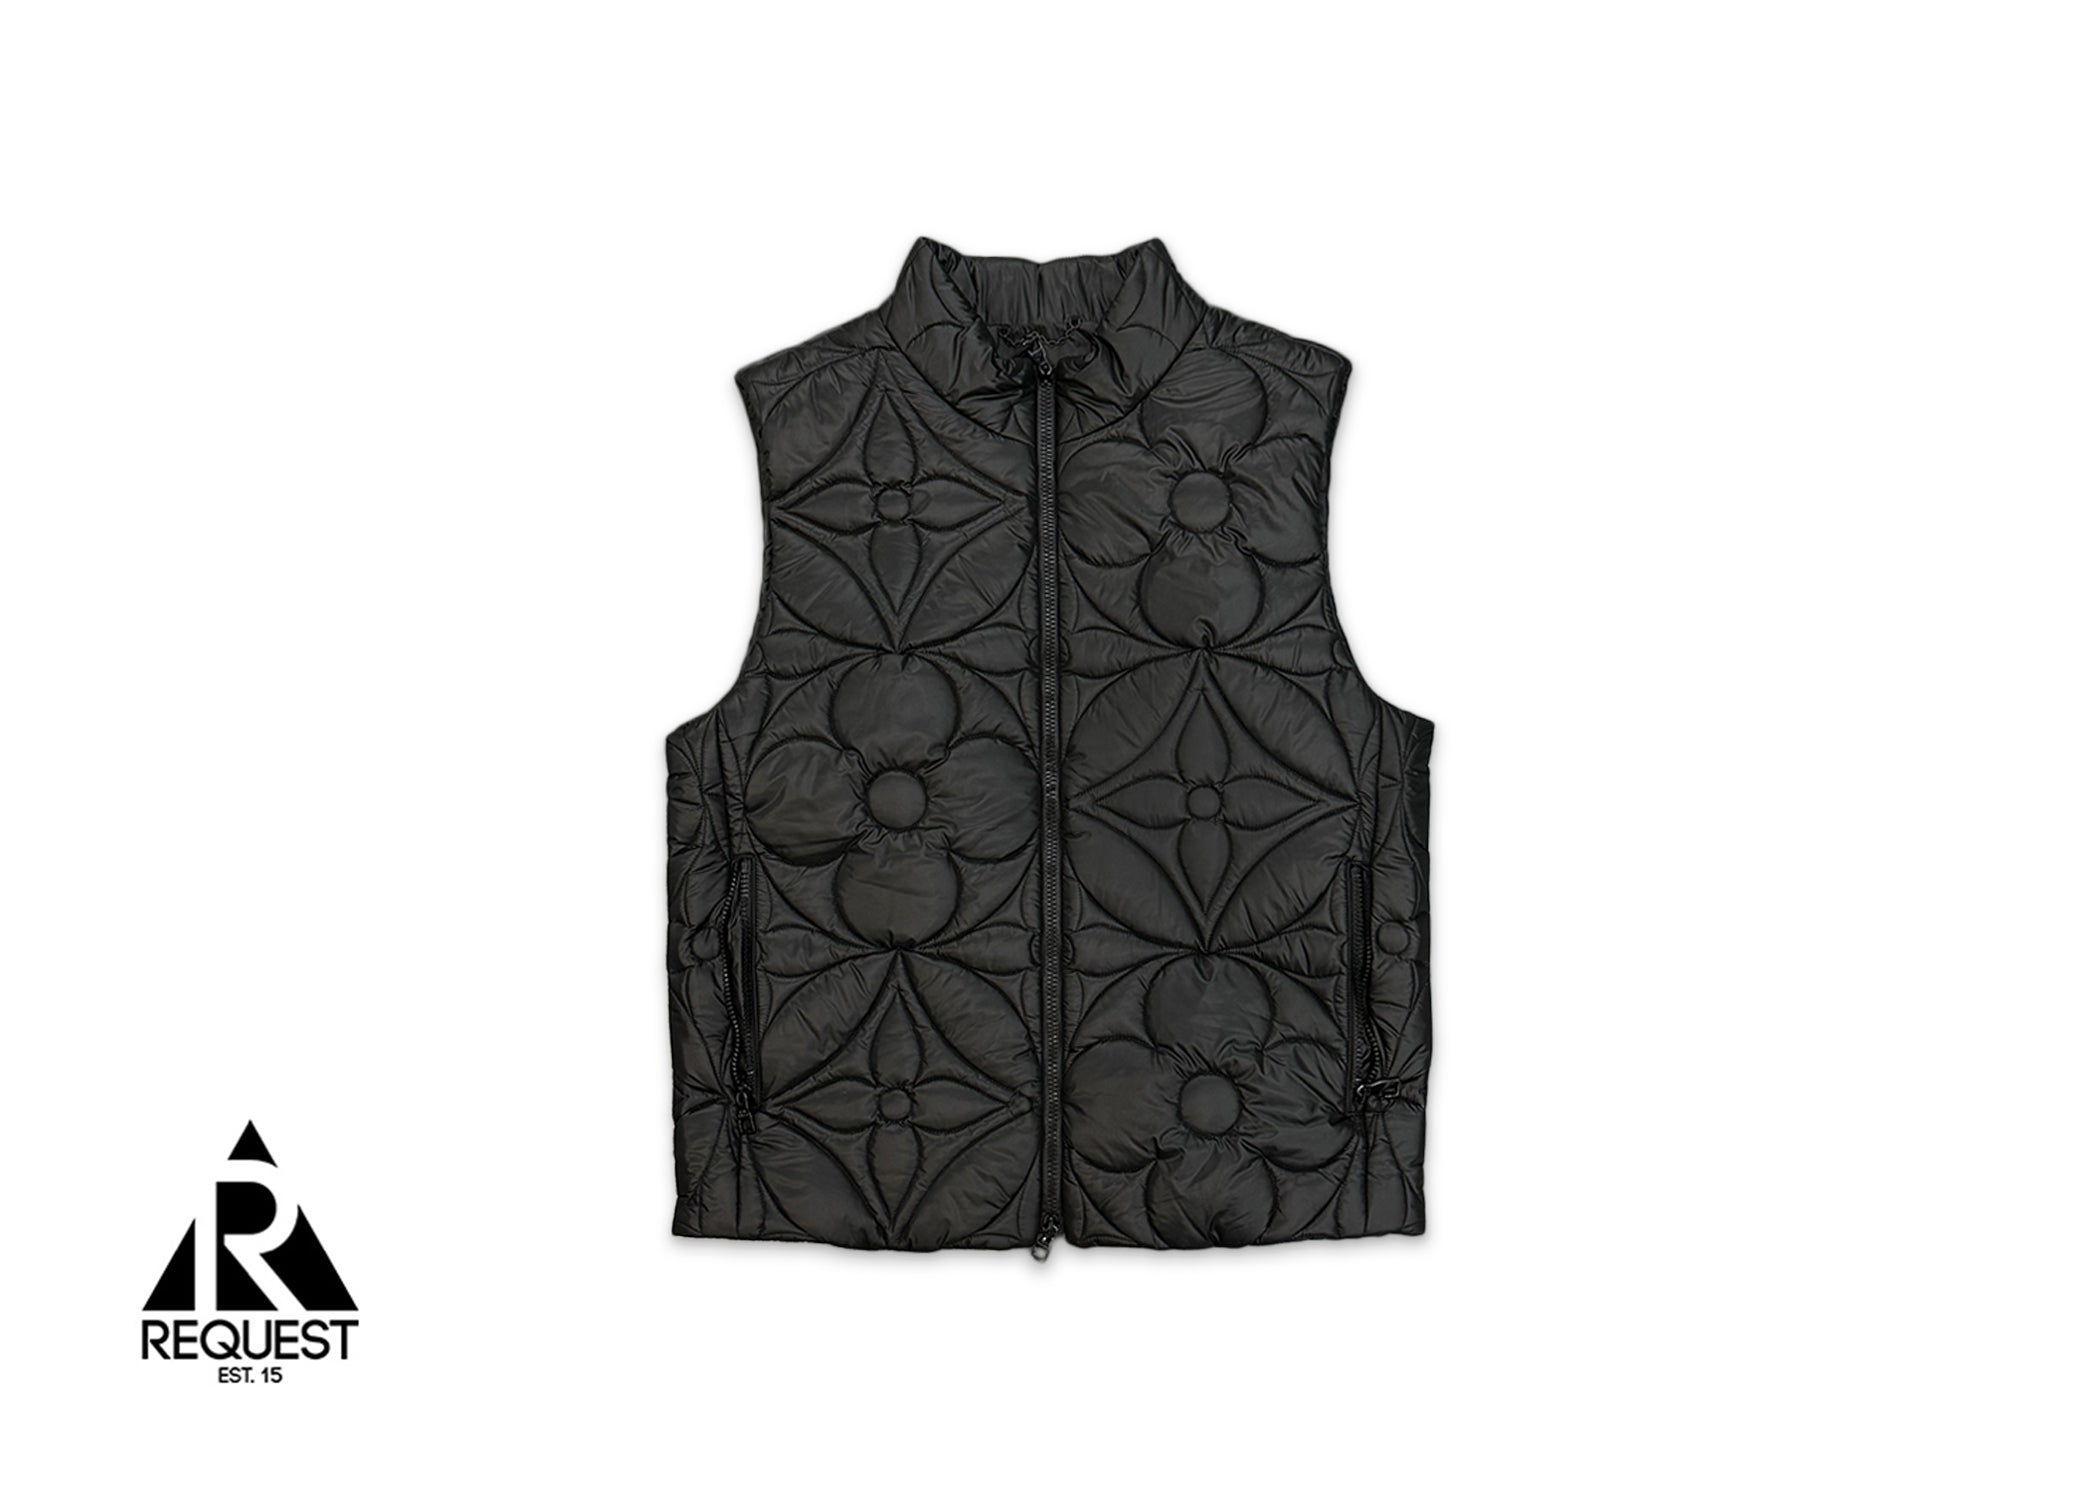 LVSE Padded Monogram Flower Gilet Vest "Black"